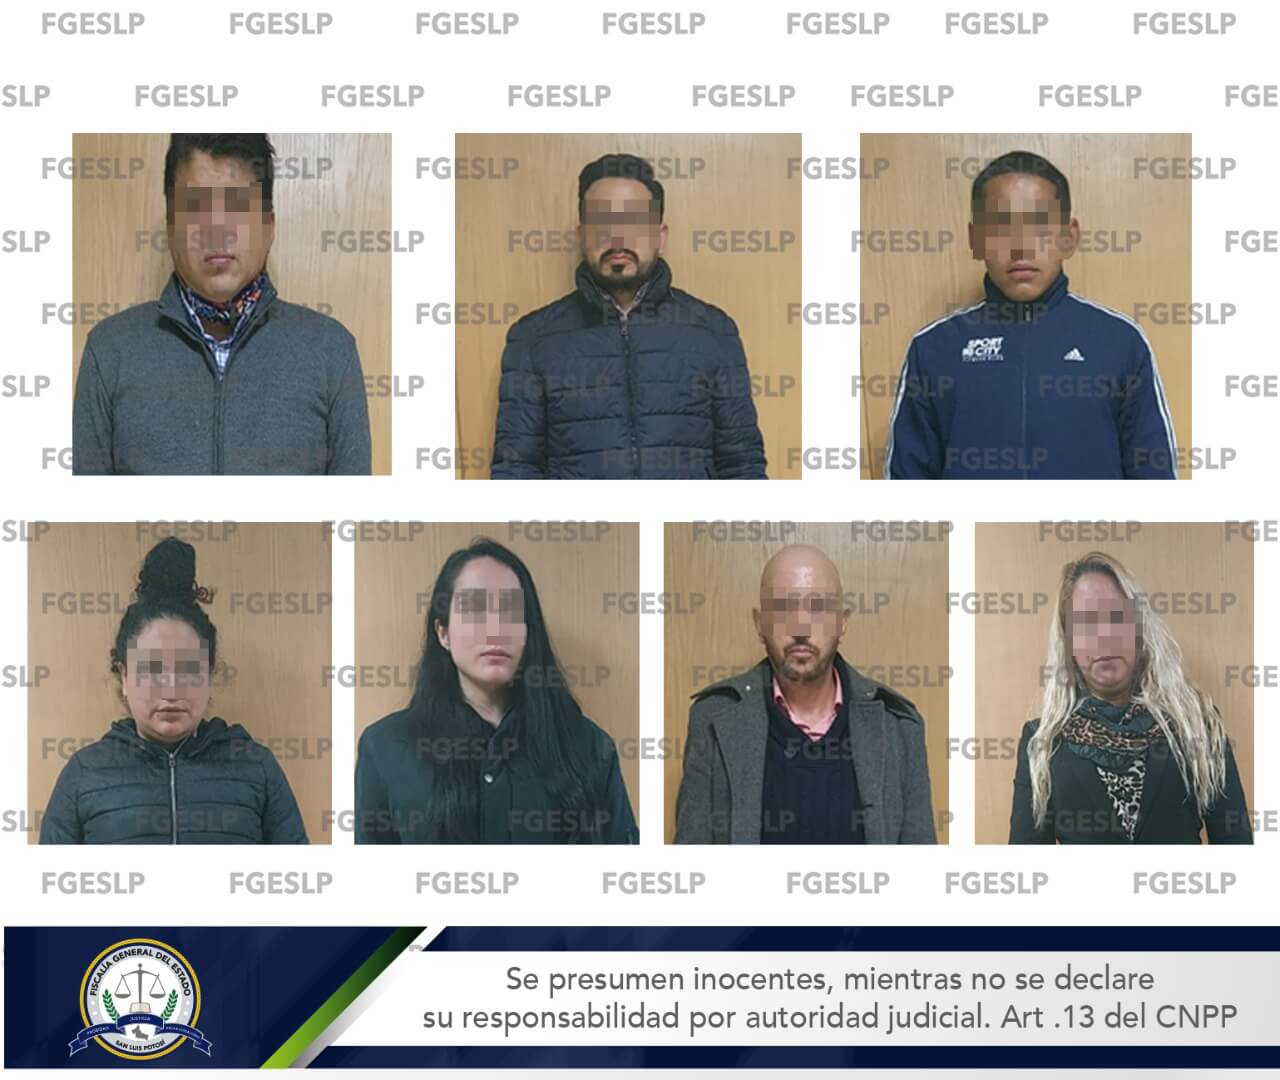 PDI llevaron a cabo la detención en flagrancia de cuatro hombres y tres mujeres en un hotel de la ciudad de San Luis Potosí